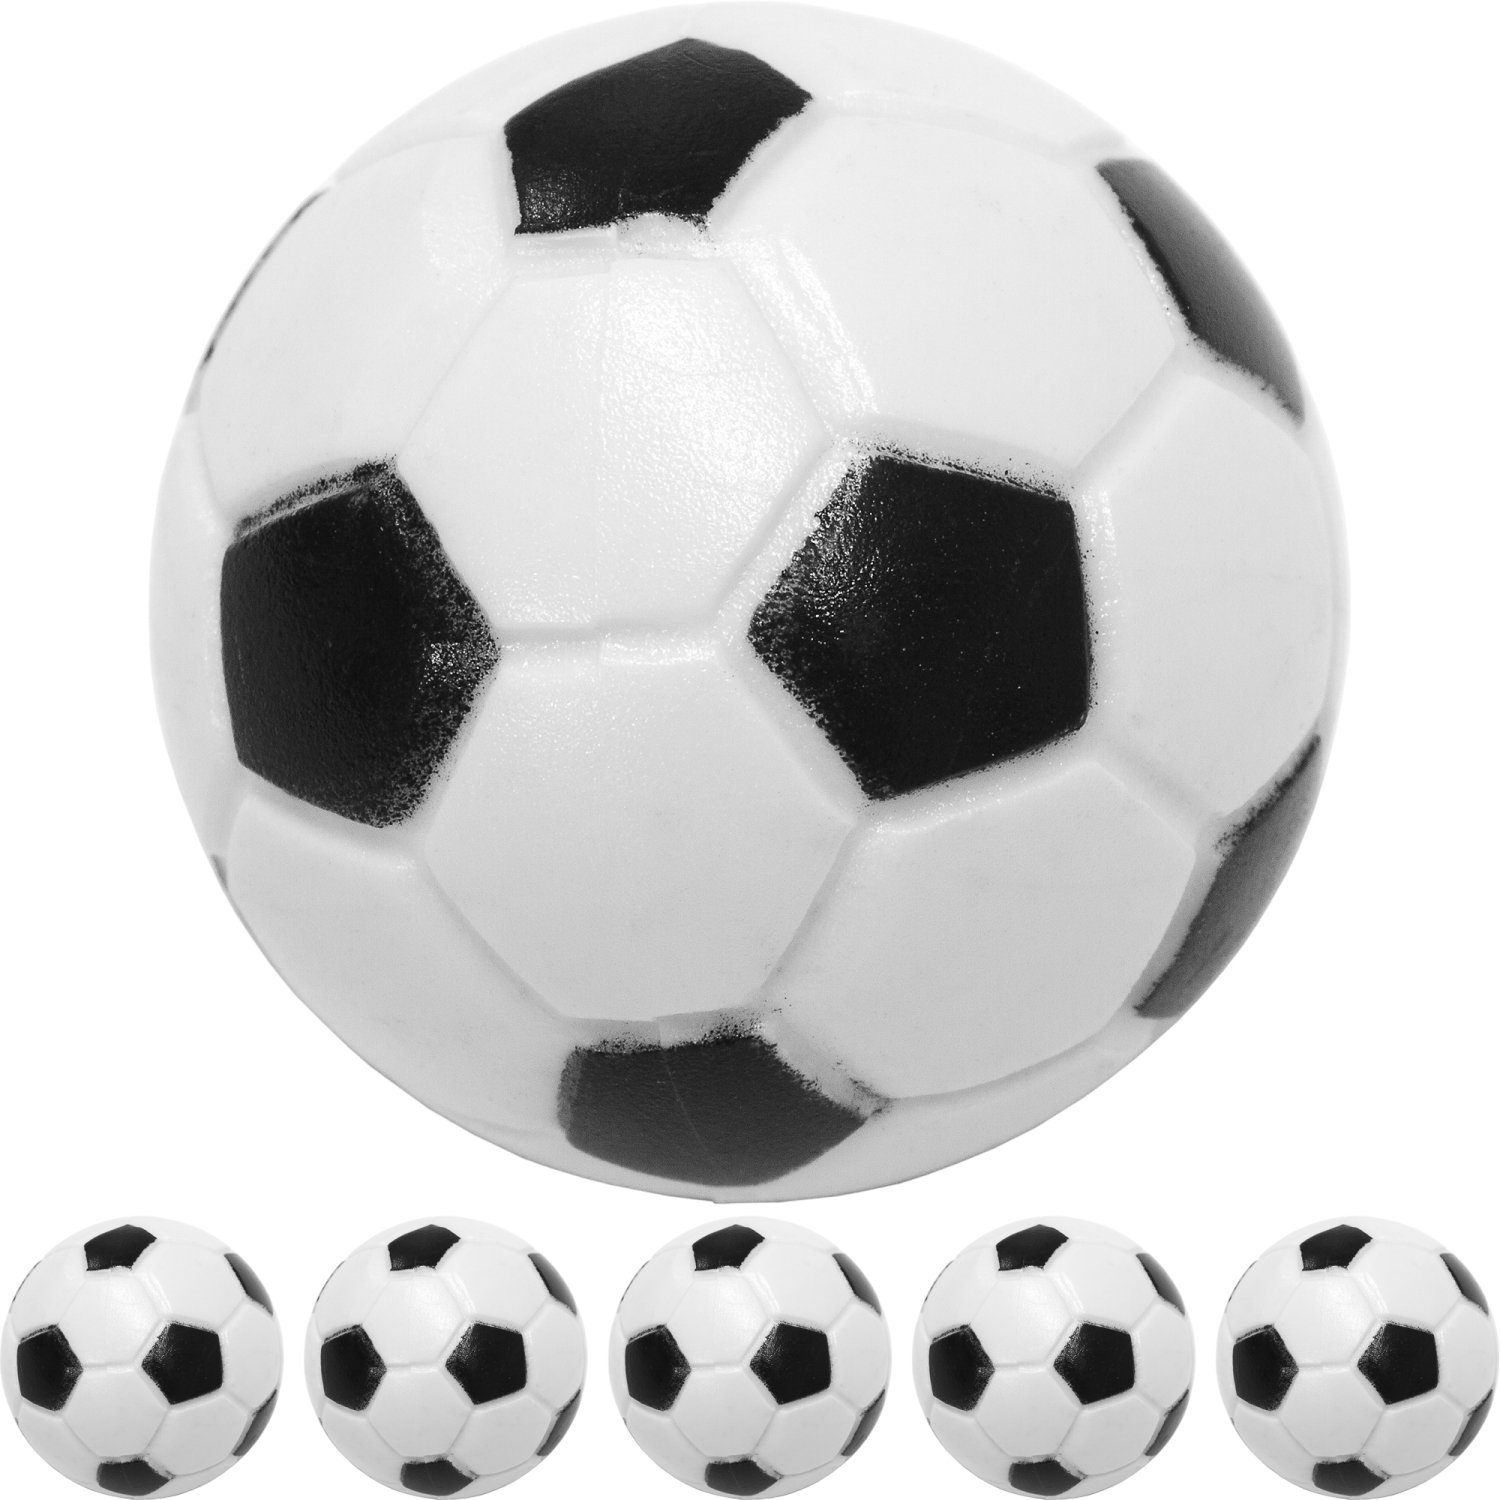 GAMES PLANET Spielball Games 10 (Klassische 5 Tischfussball Kickerbälle oder Planet Ball 5er (Set, Kicker Durchmesser Fußball-Optik), Stück und 31mm, Farbe: Pack), hart Bälle, schnell, schwarz/weiß